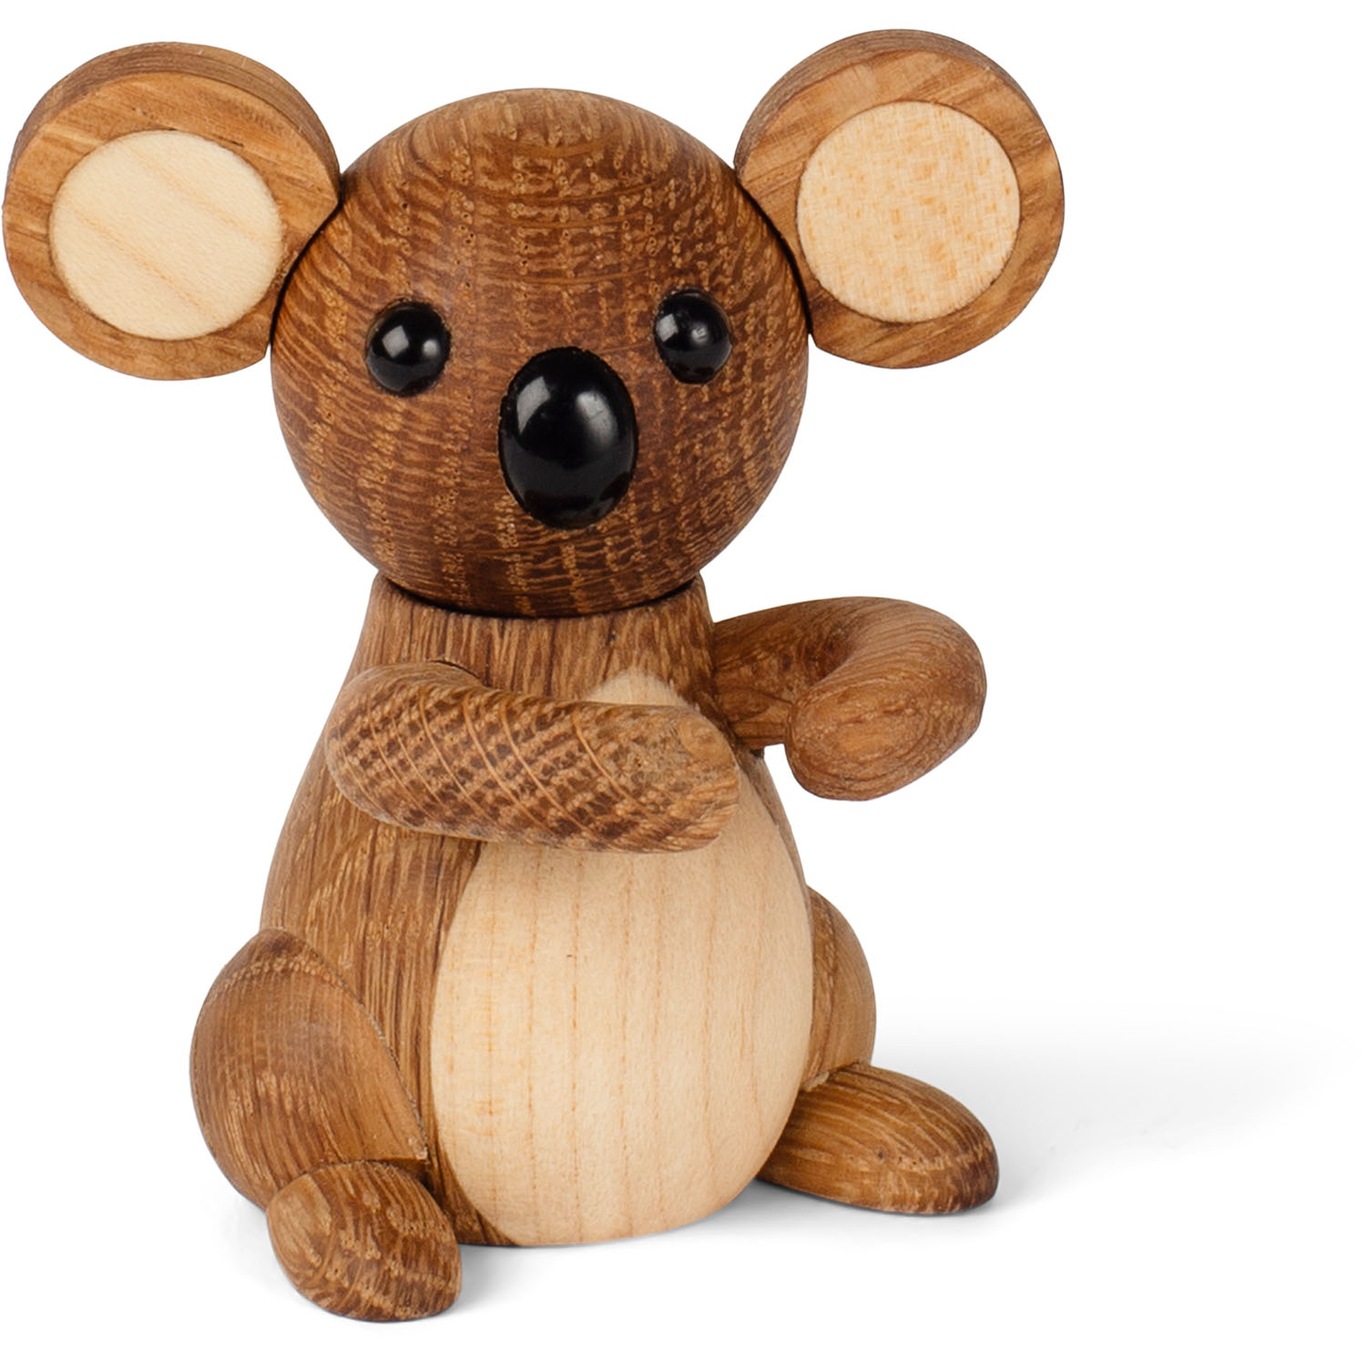 Joey Koala Wooden Figurine 7.5 cm